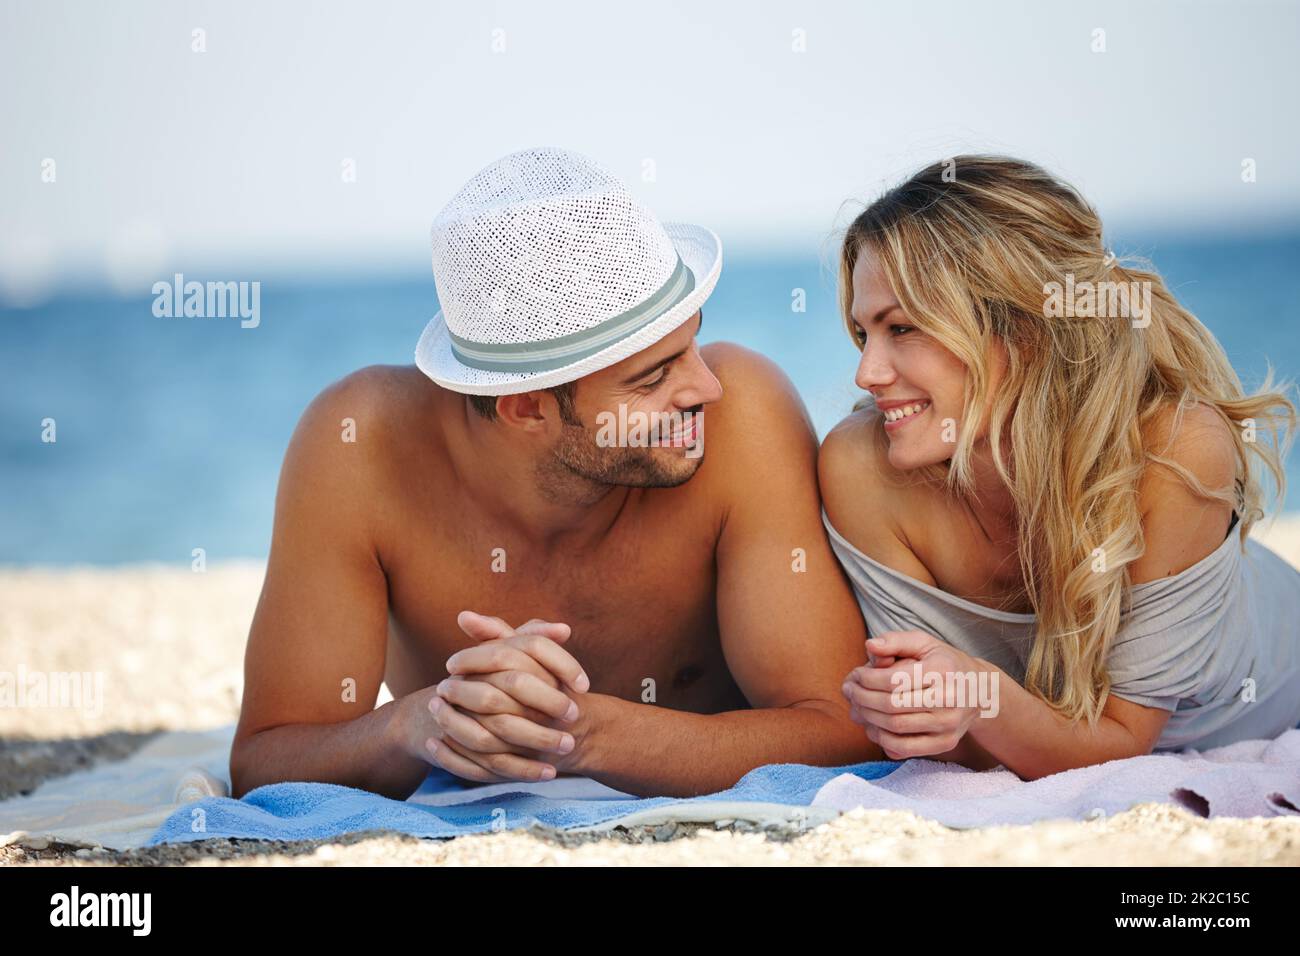 Vacanza romantica. Scatto di una giovane coppia felice sdraiata sulla spiaggia. Foto Stock